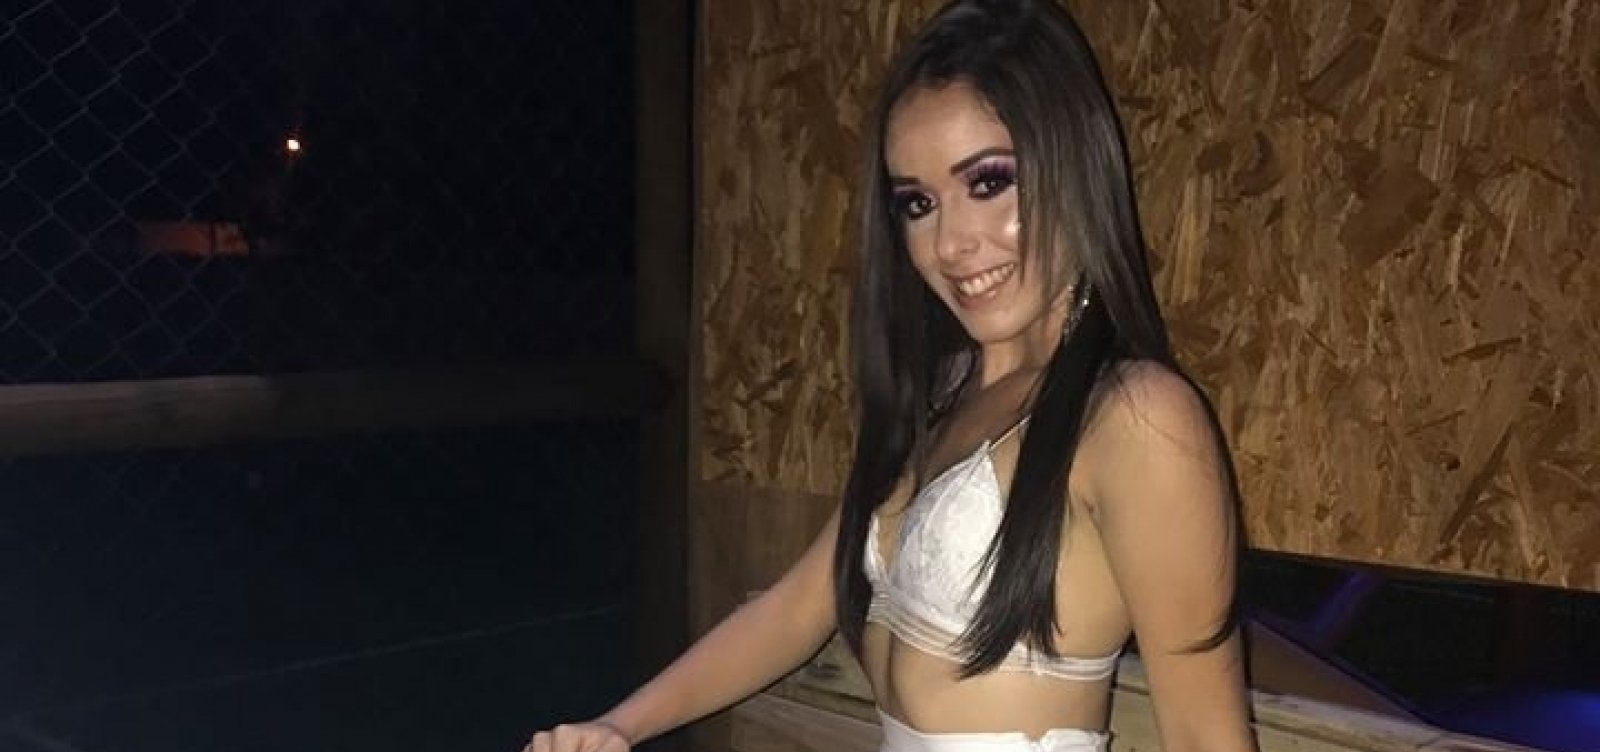 Casa de shows em Jacobina adia show após morte de modelo que caiu de jet ski